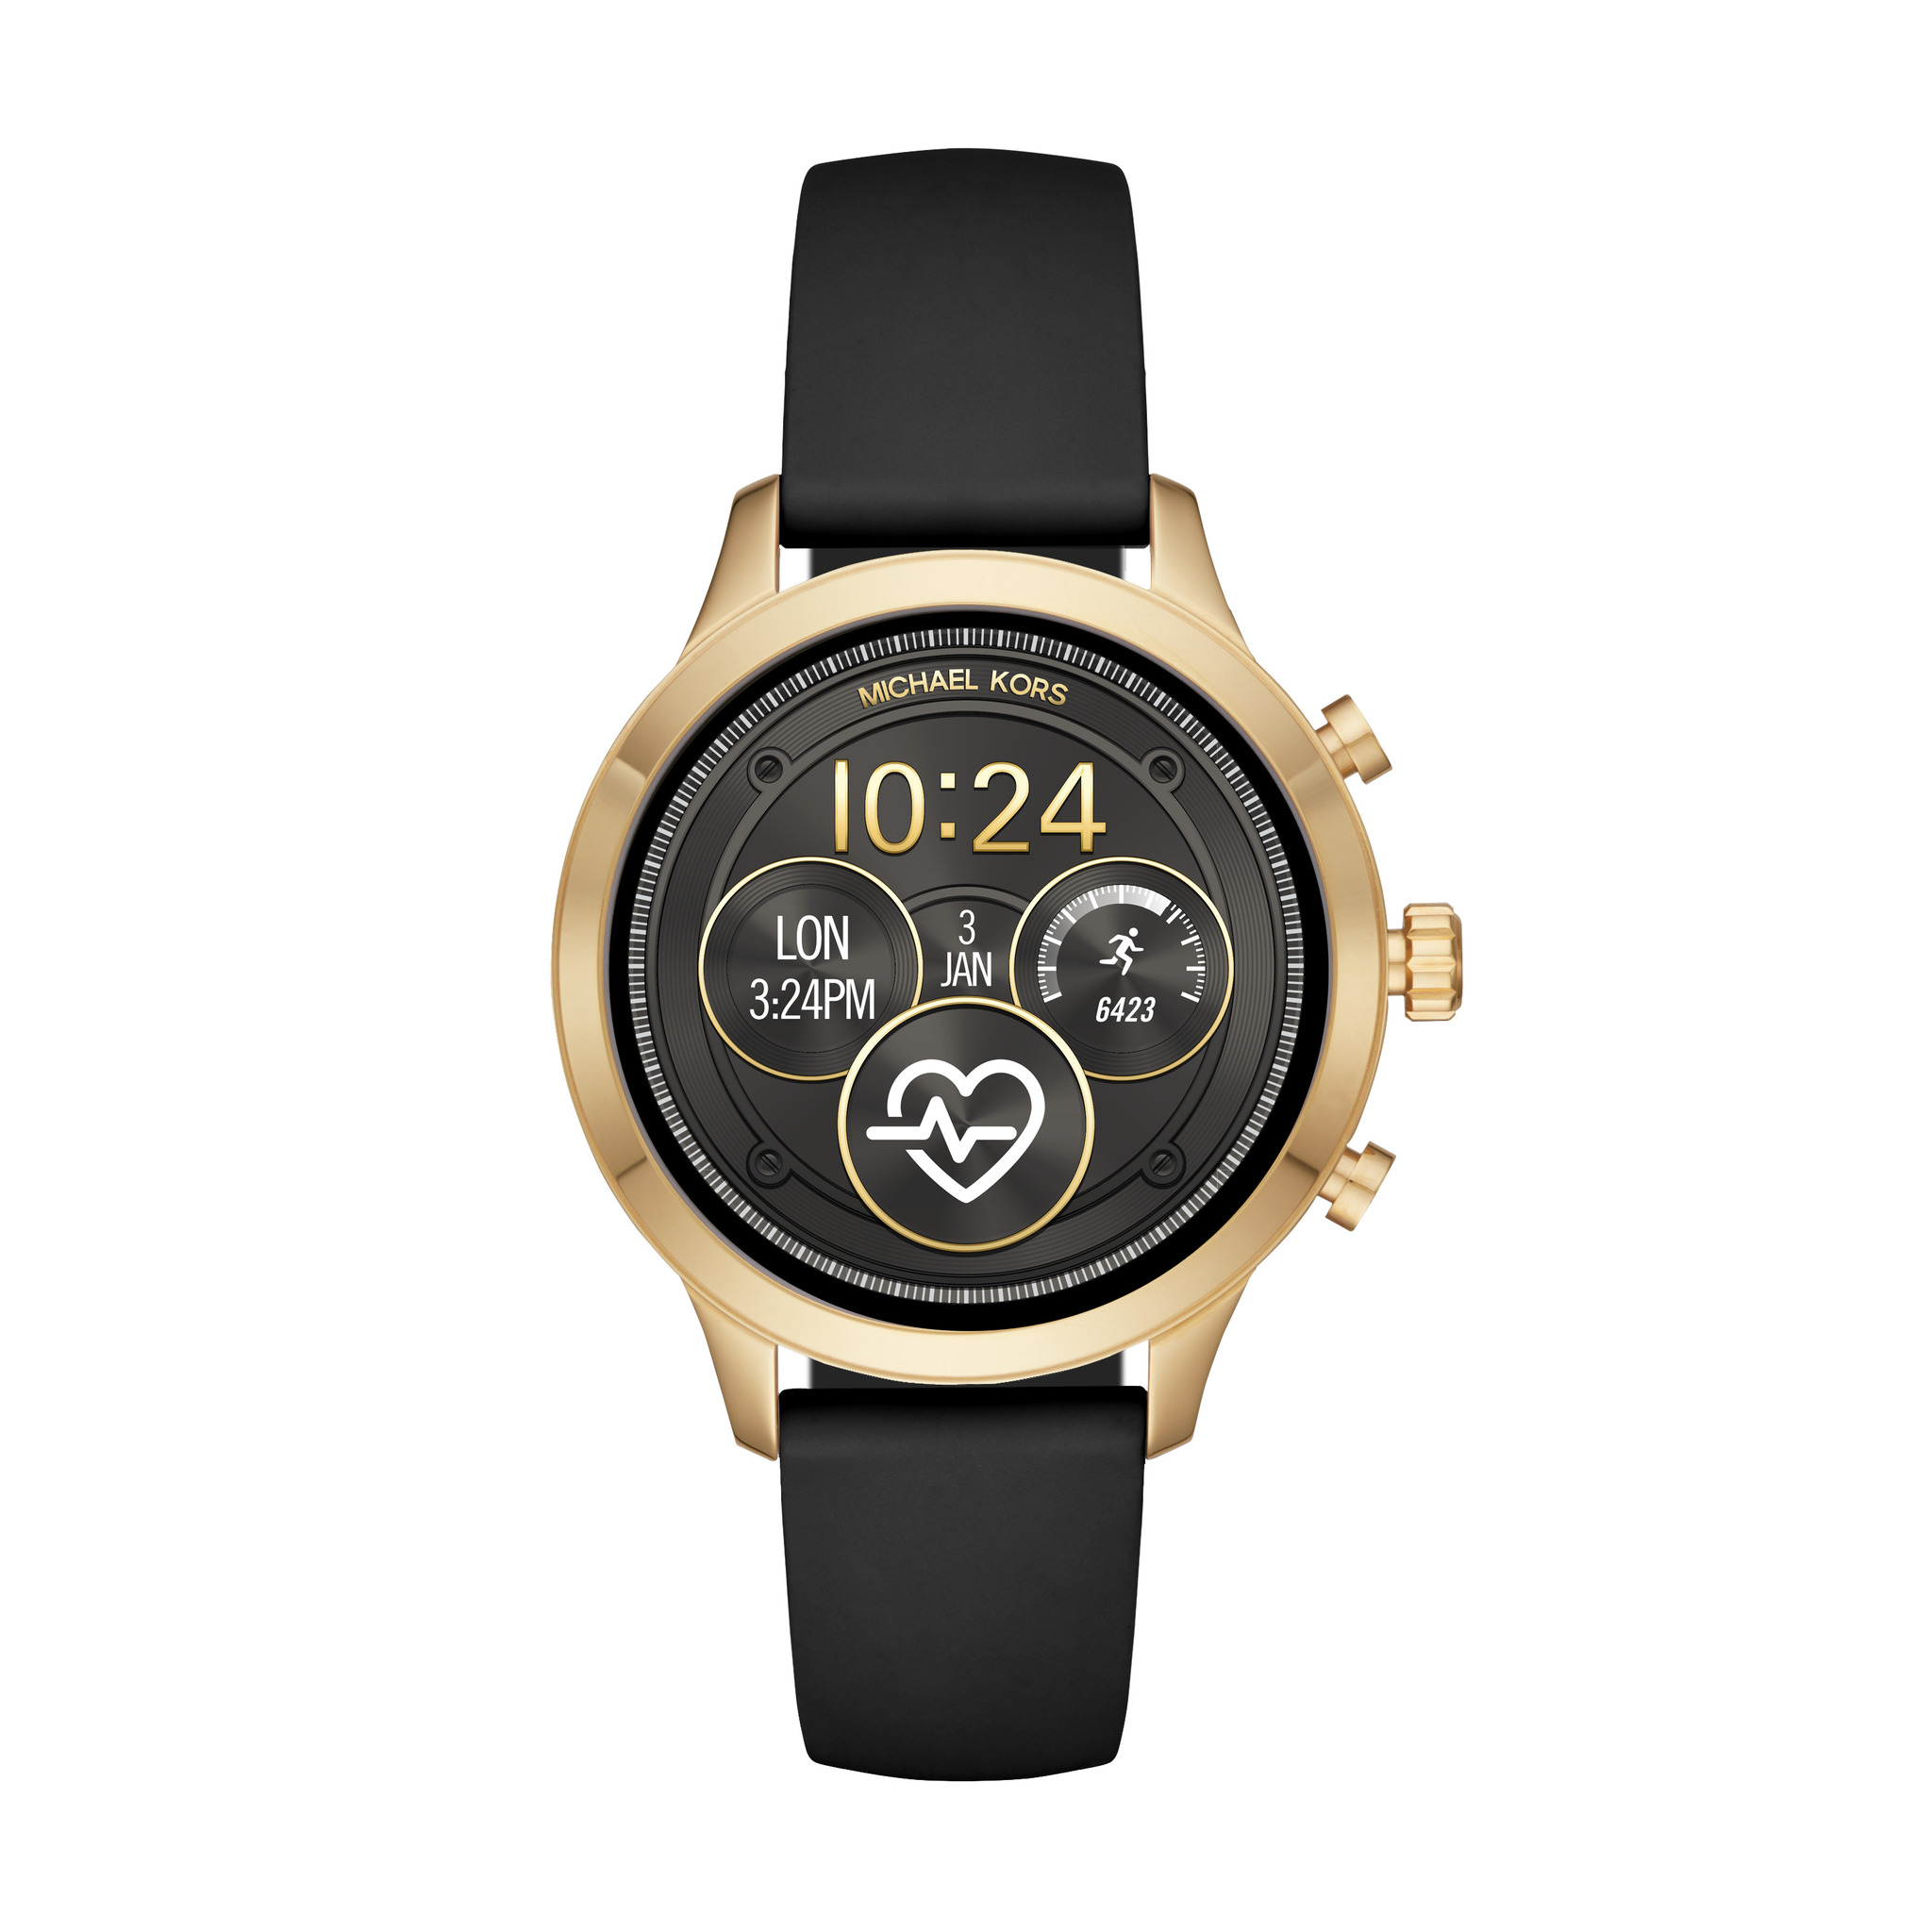 Женские оригинальные наручные часы Michael Kors Darci 33 мм Michael Kors  45024674 купить за 11 840  в интернетмагазине Wildberries